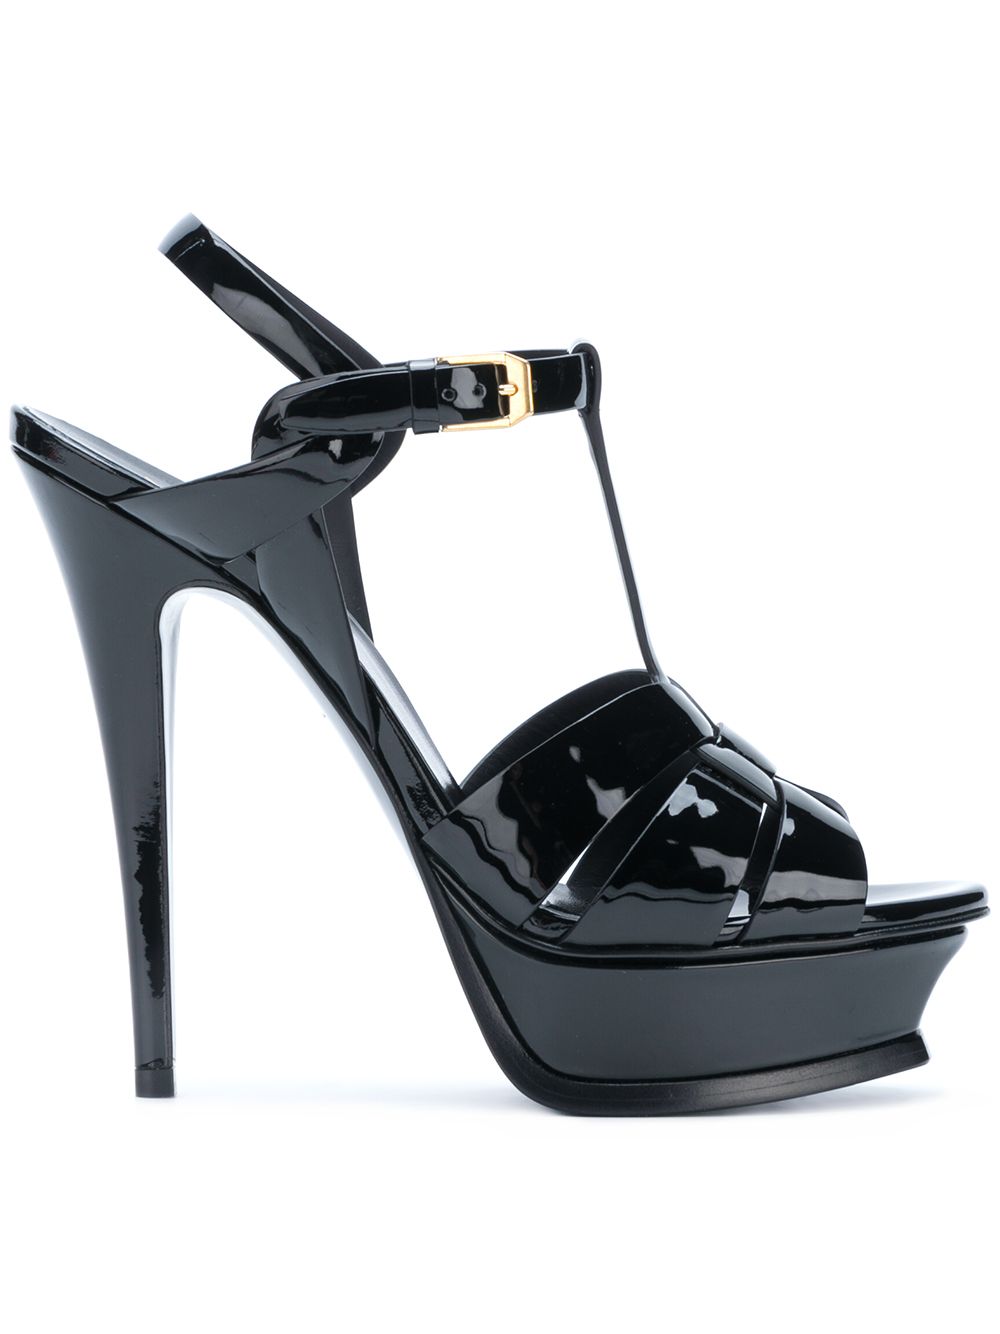 Tribute Patent Leather Sandals дамски обувки Saint Laurent 849900515_36_5